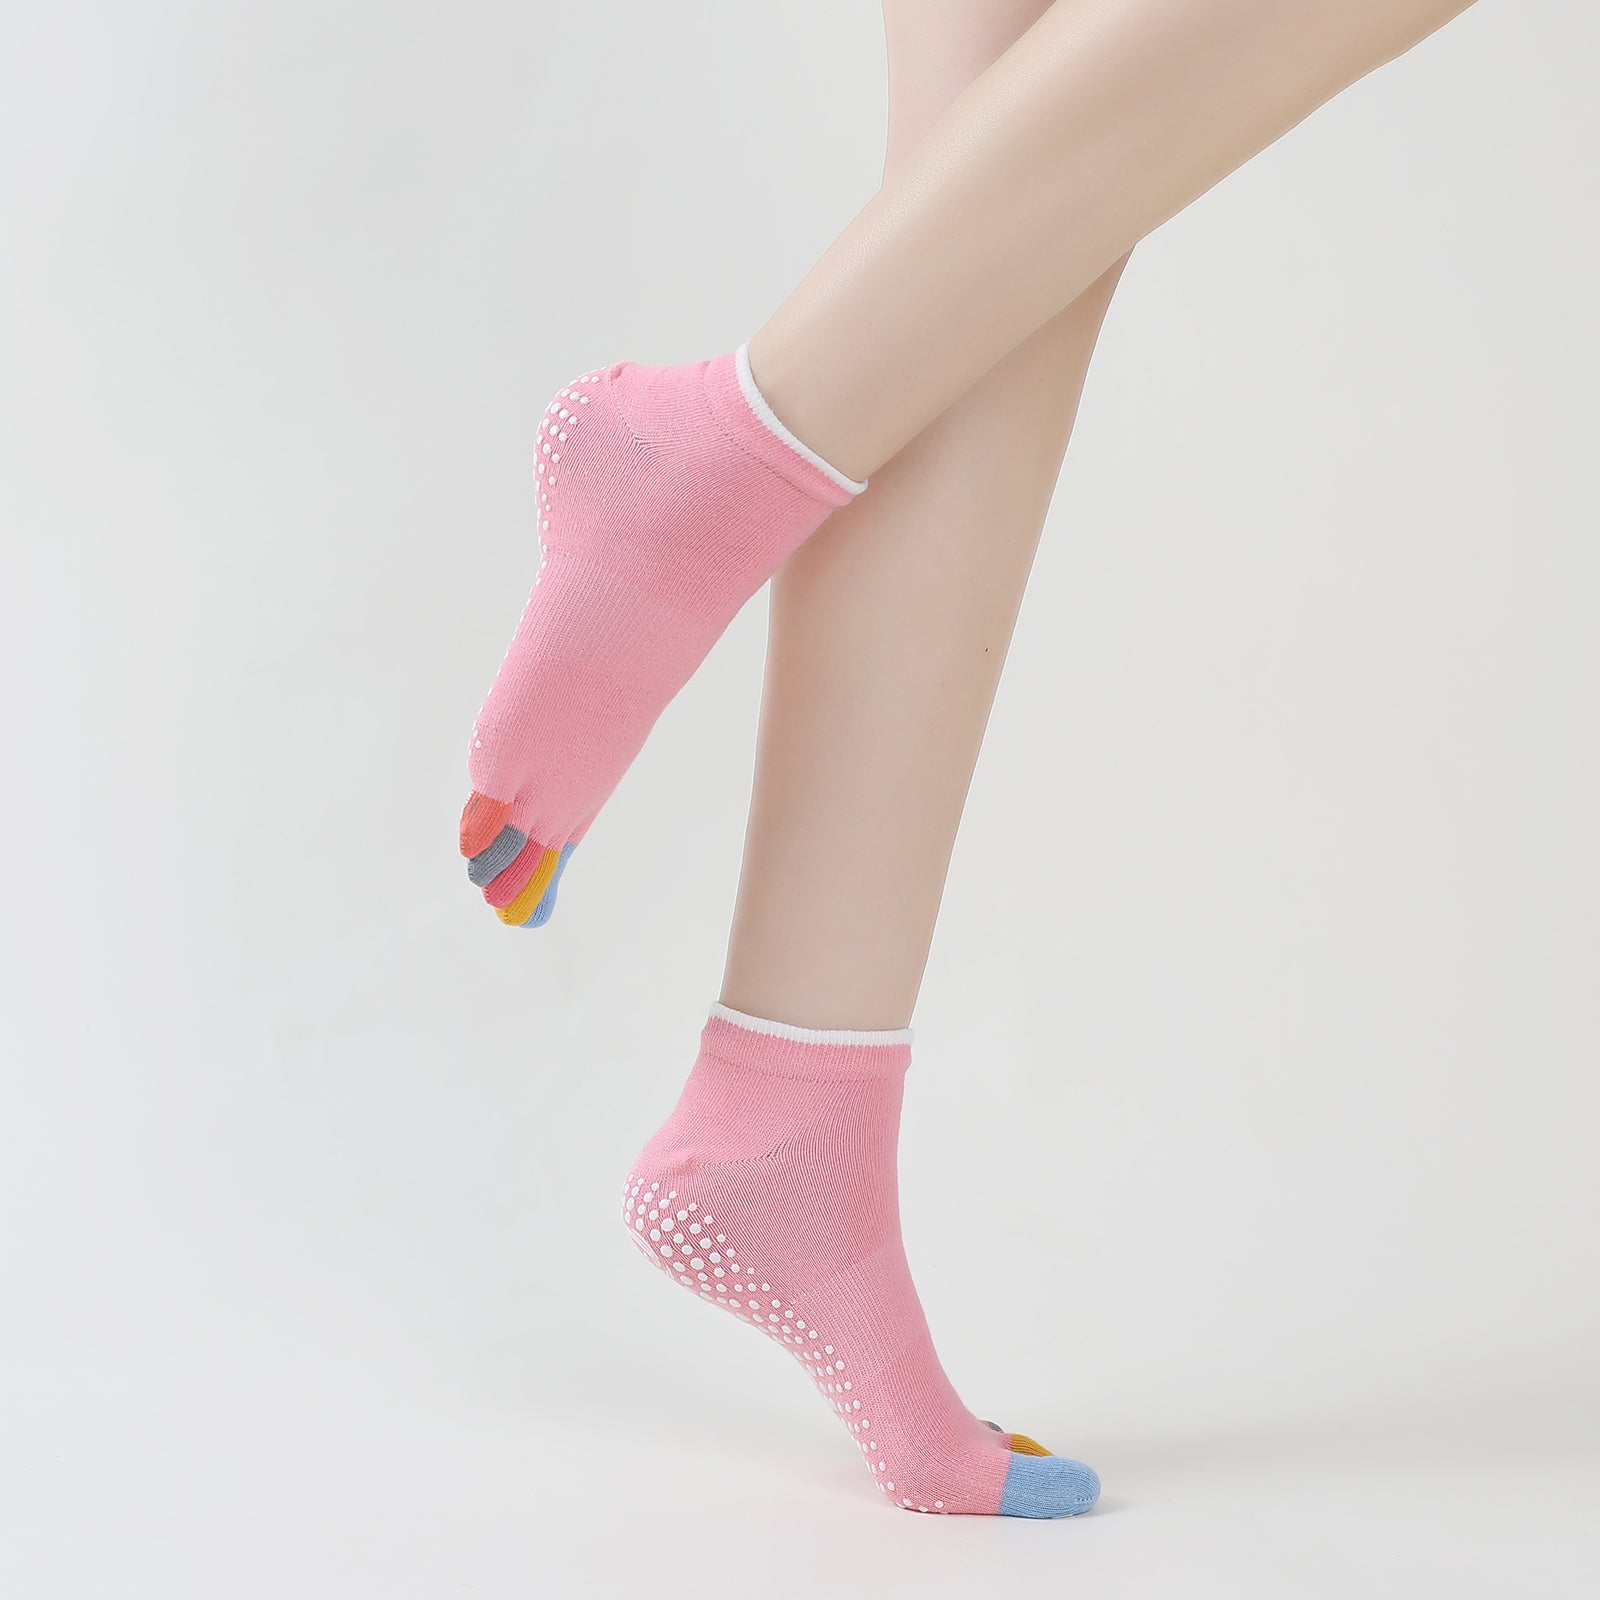  COANSEN Yoga Socks with Grips for Women, Toeless Socks